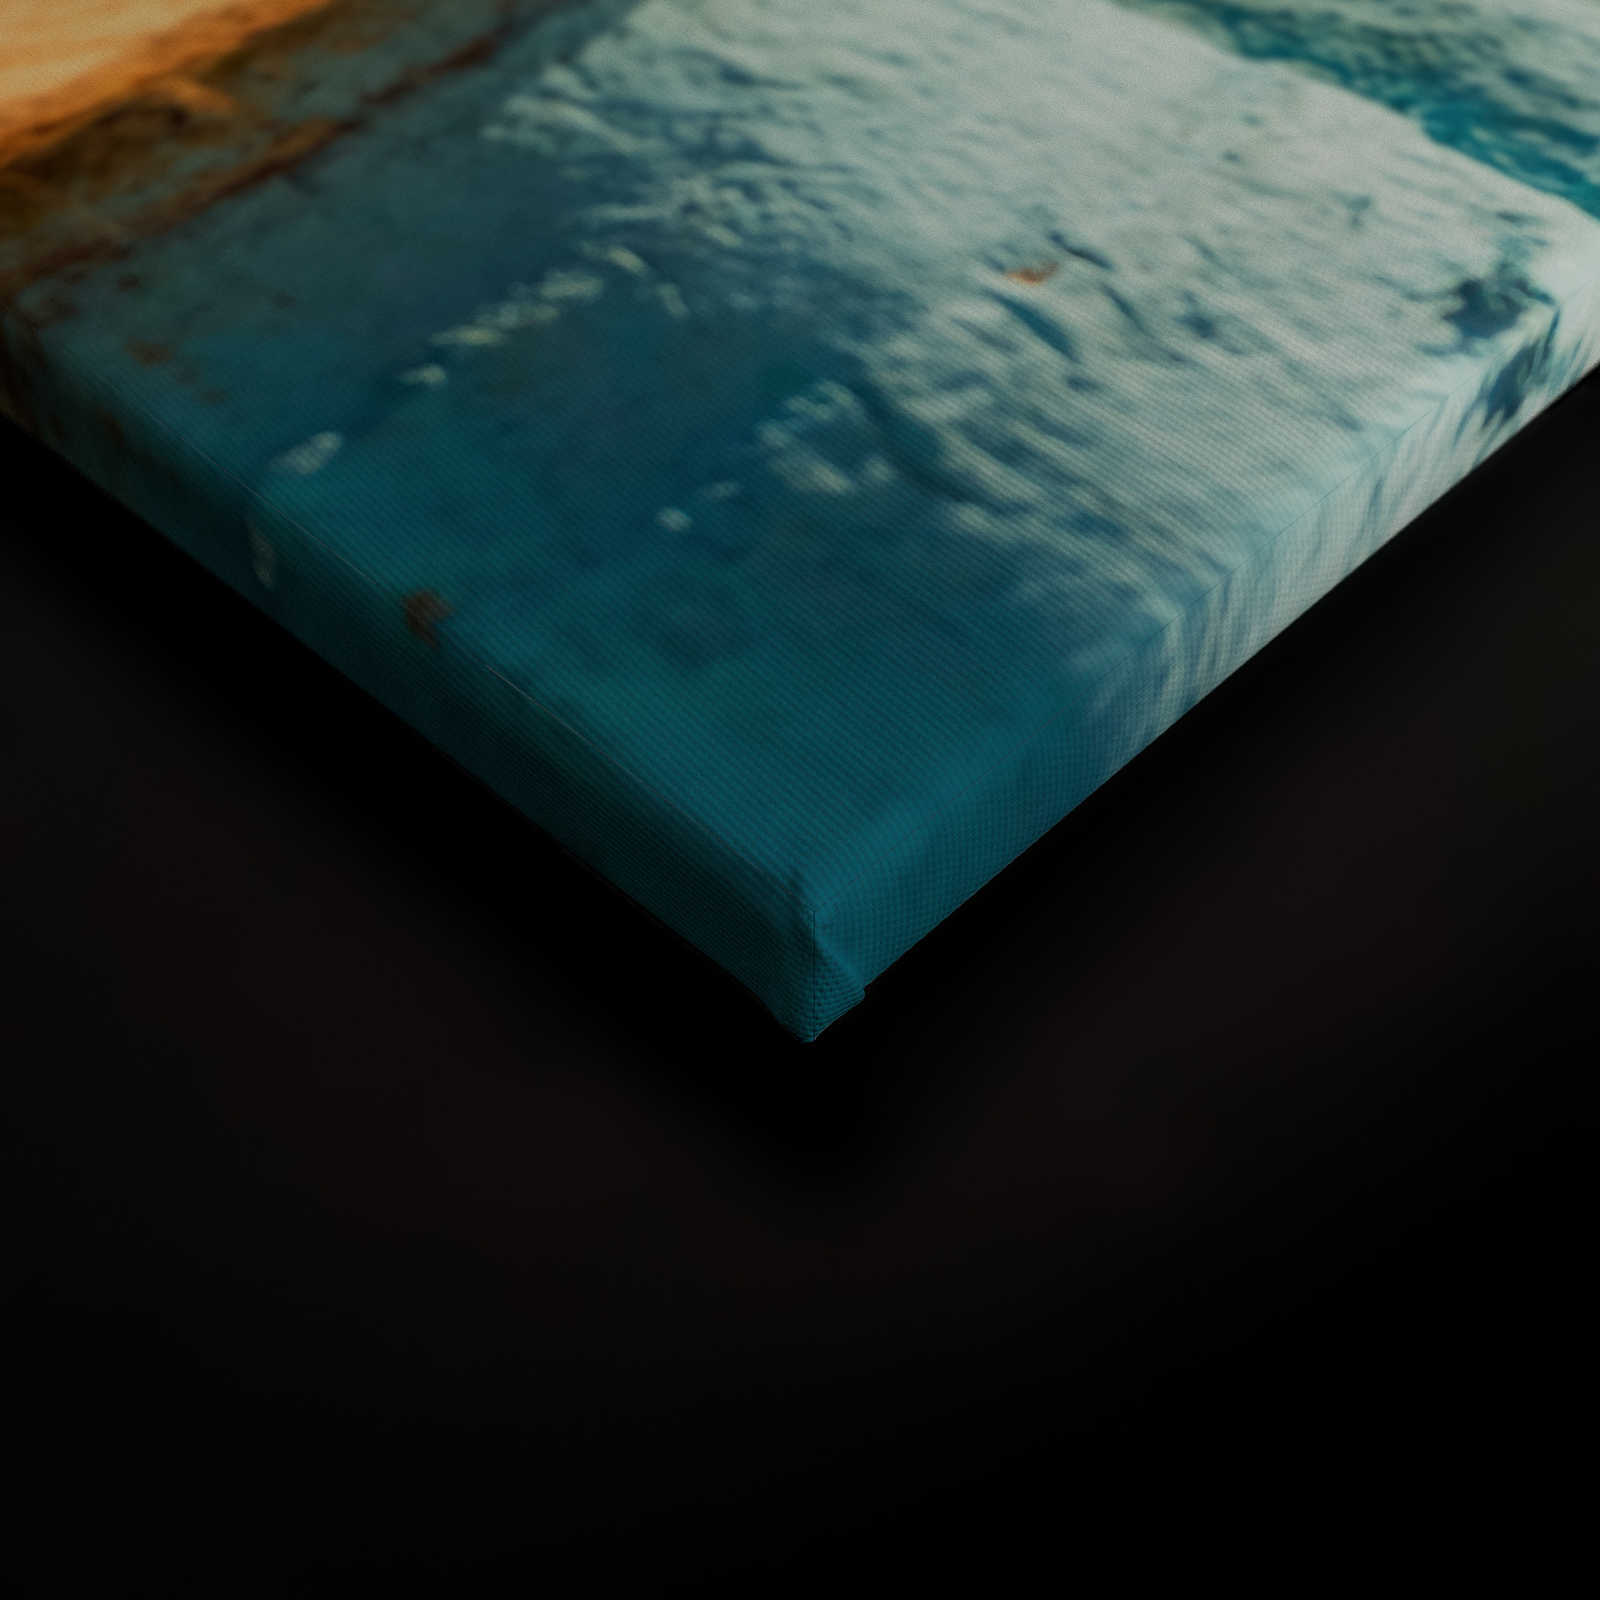             Canvas met standbar en uitzicht op zee - 0,90 m x 0,60 m
        